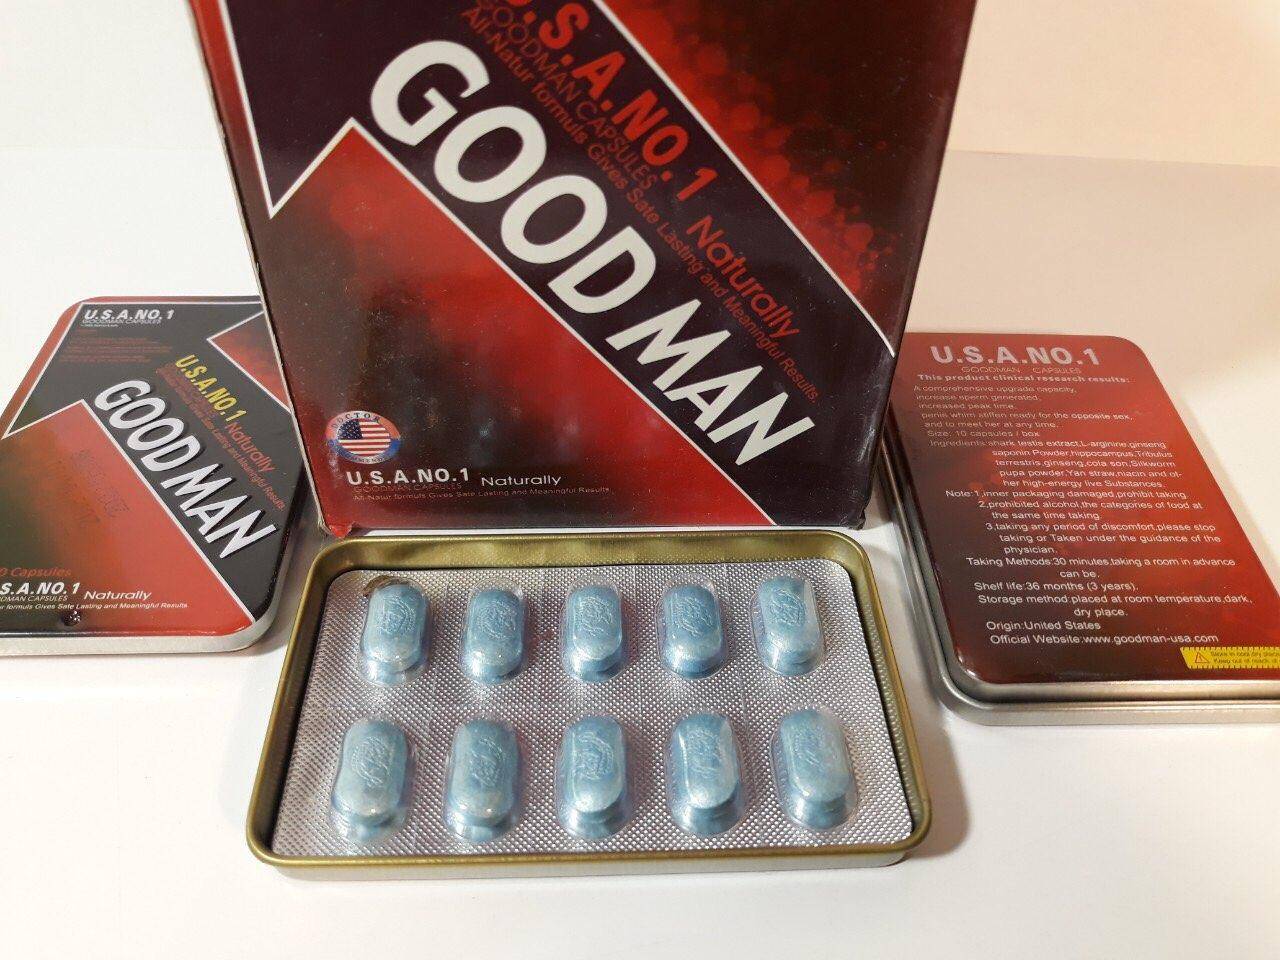 Мужские препараты для повышения потенции. Goodman таблетки для мужчин. Лекарство для потенции. Препараты для мужской потенции. Таблетки для мужской эрекции.